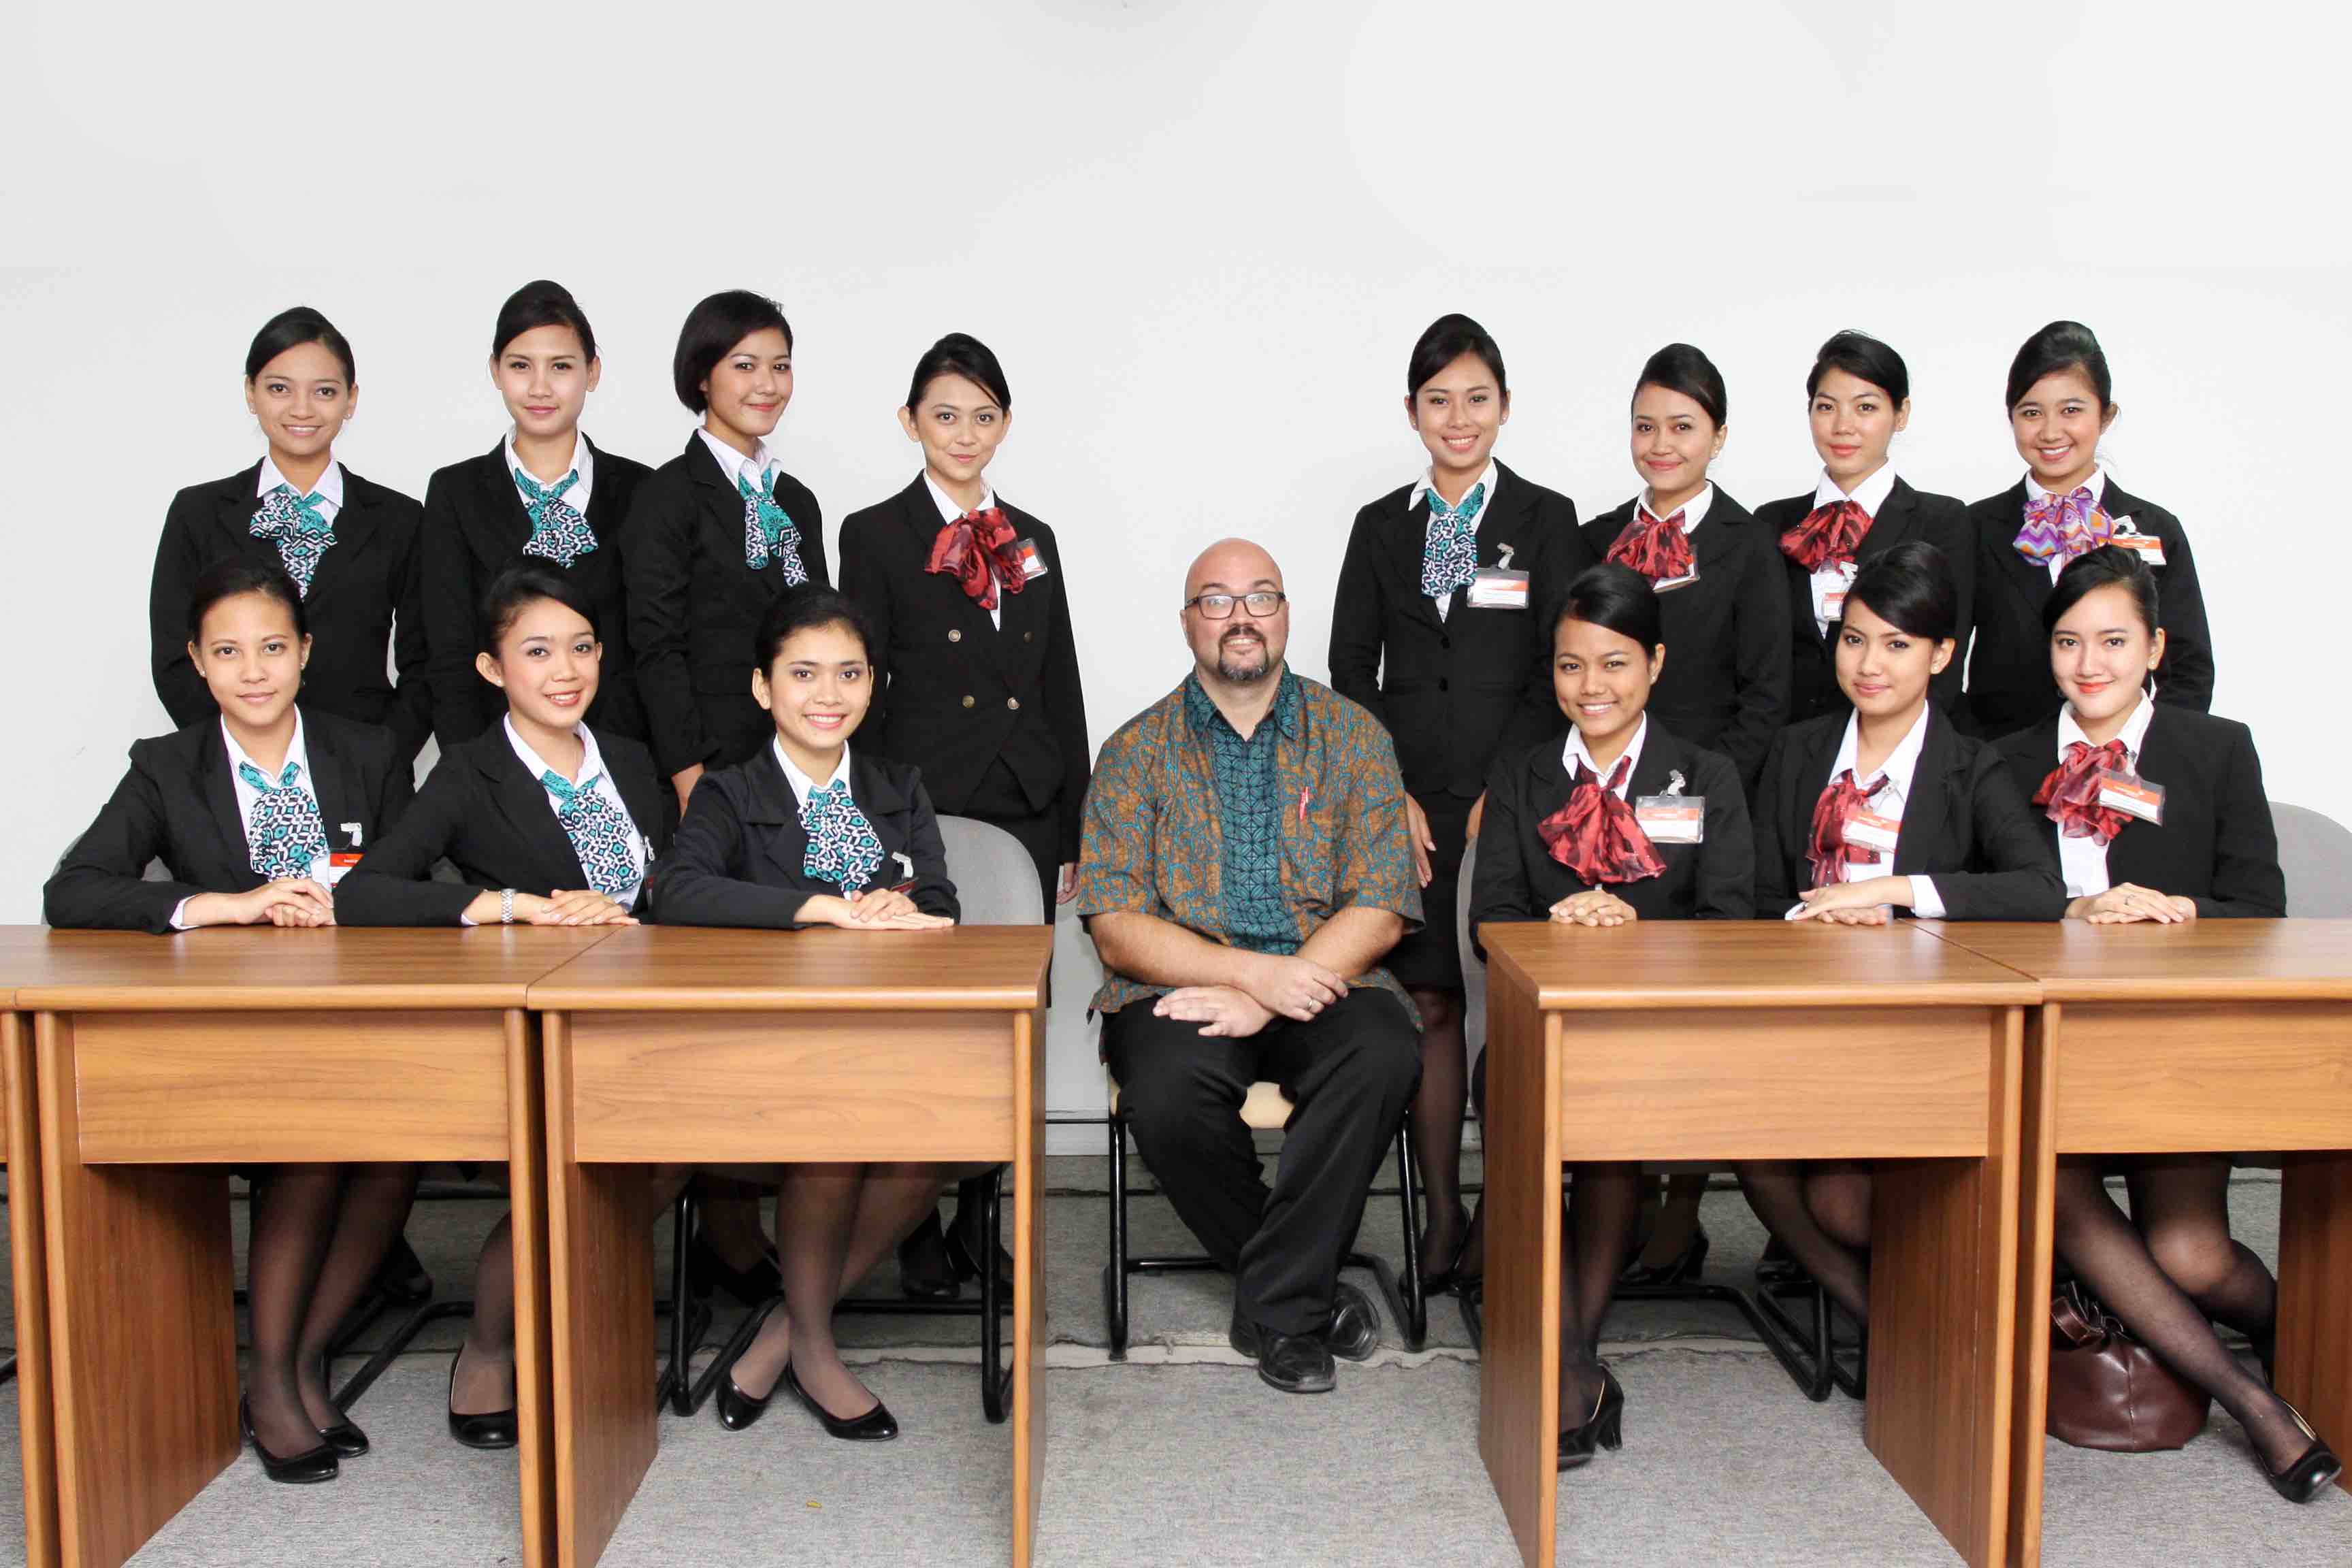 English Class with Garuda Indonesia